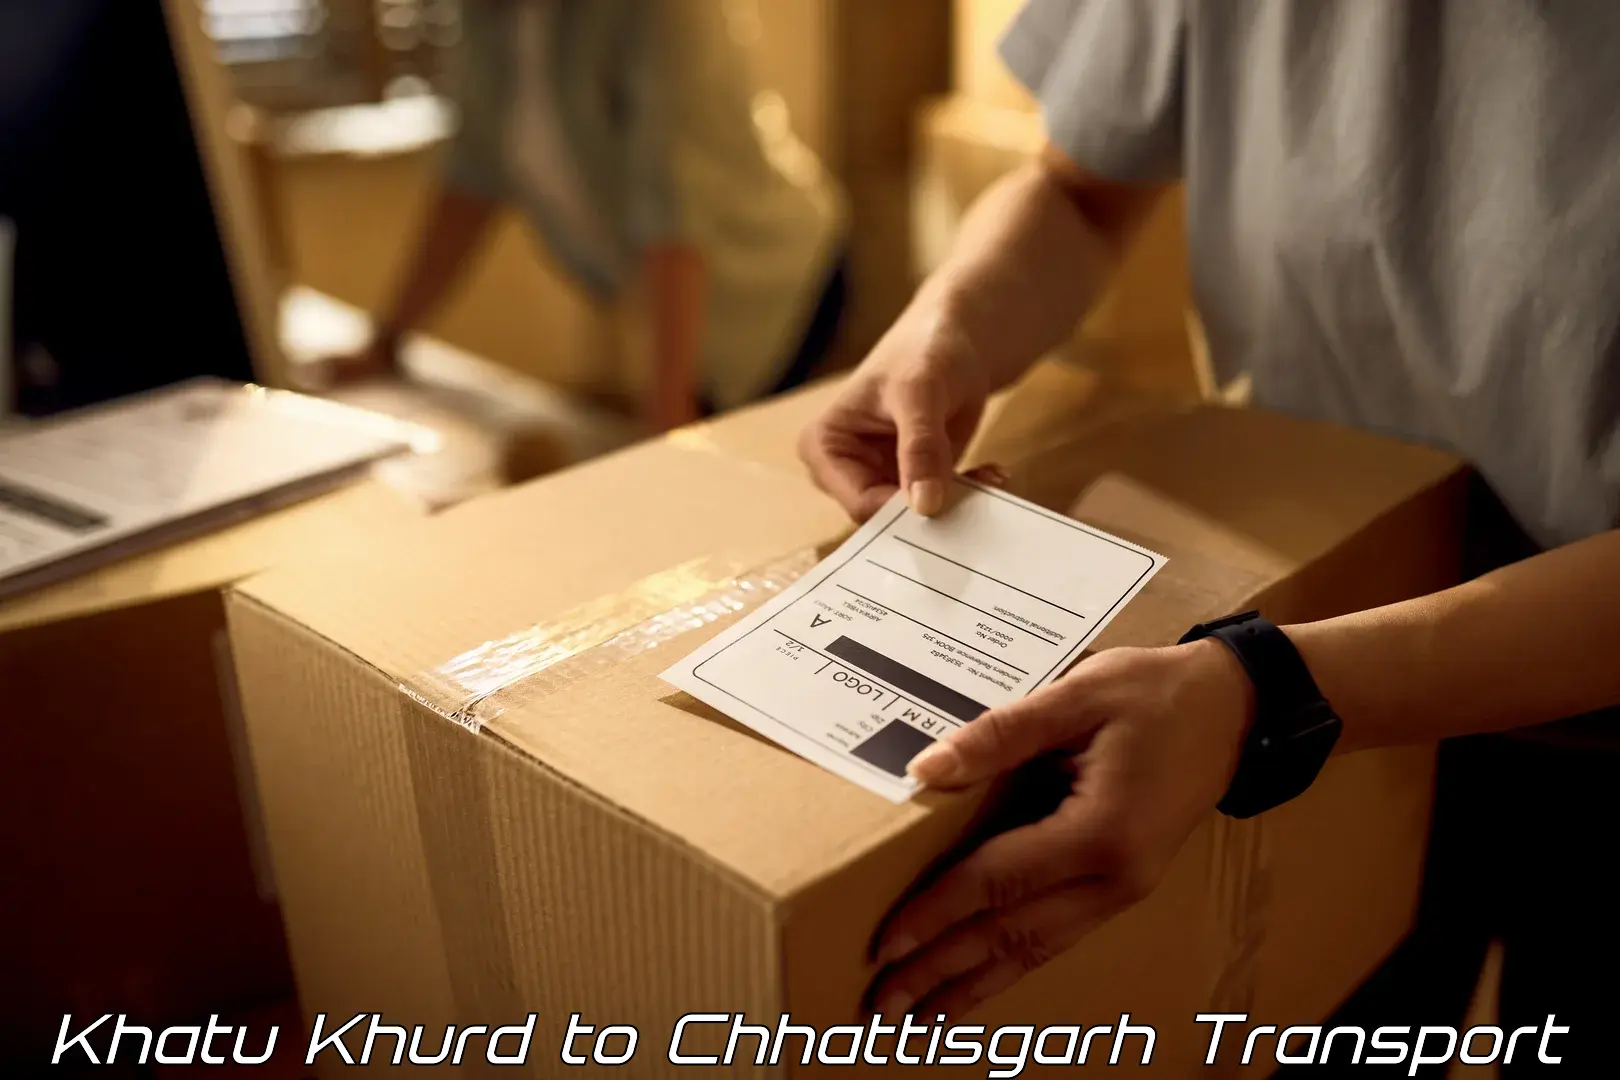 International cargo transportation services Khatu Khurd to Patna Chhattisgarh